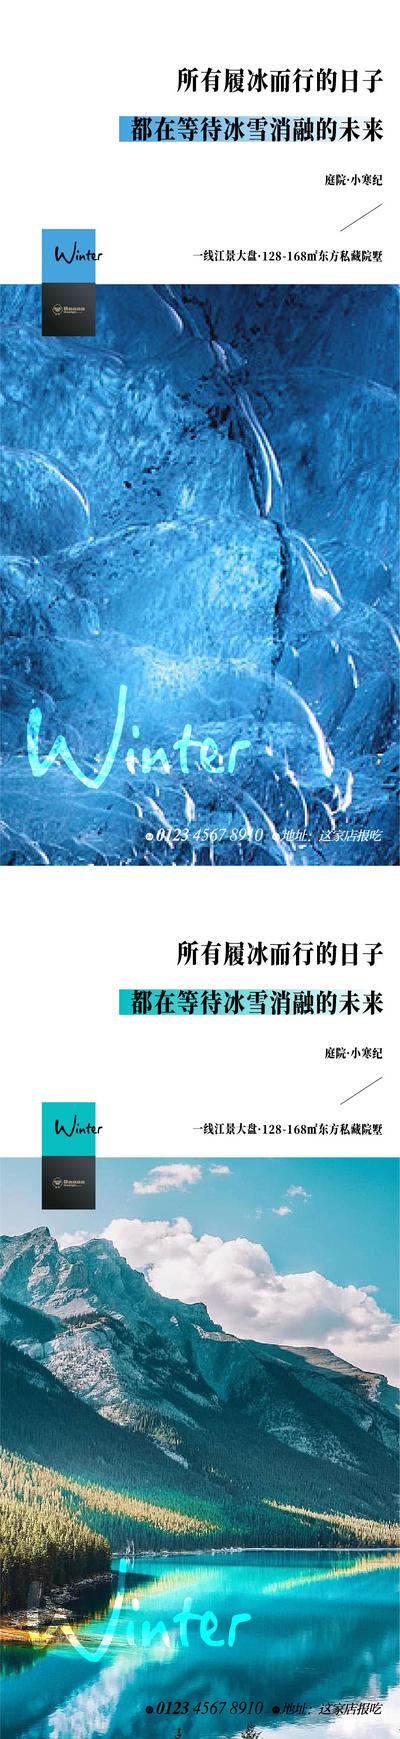 南门网 节气 系列 小寒 大寒 版式 刷屏 微信 传统节日 参考 冬 雪